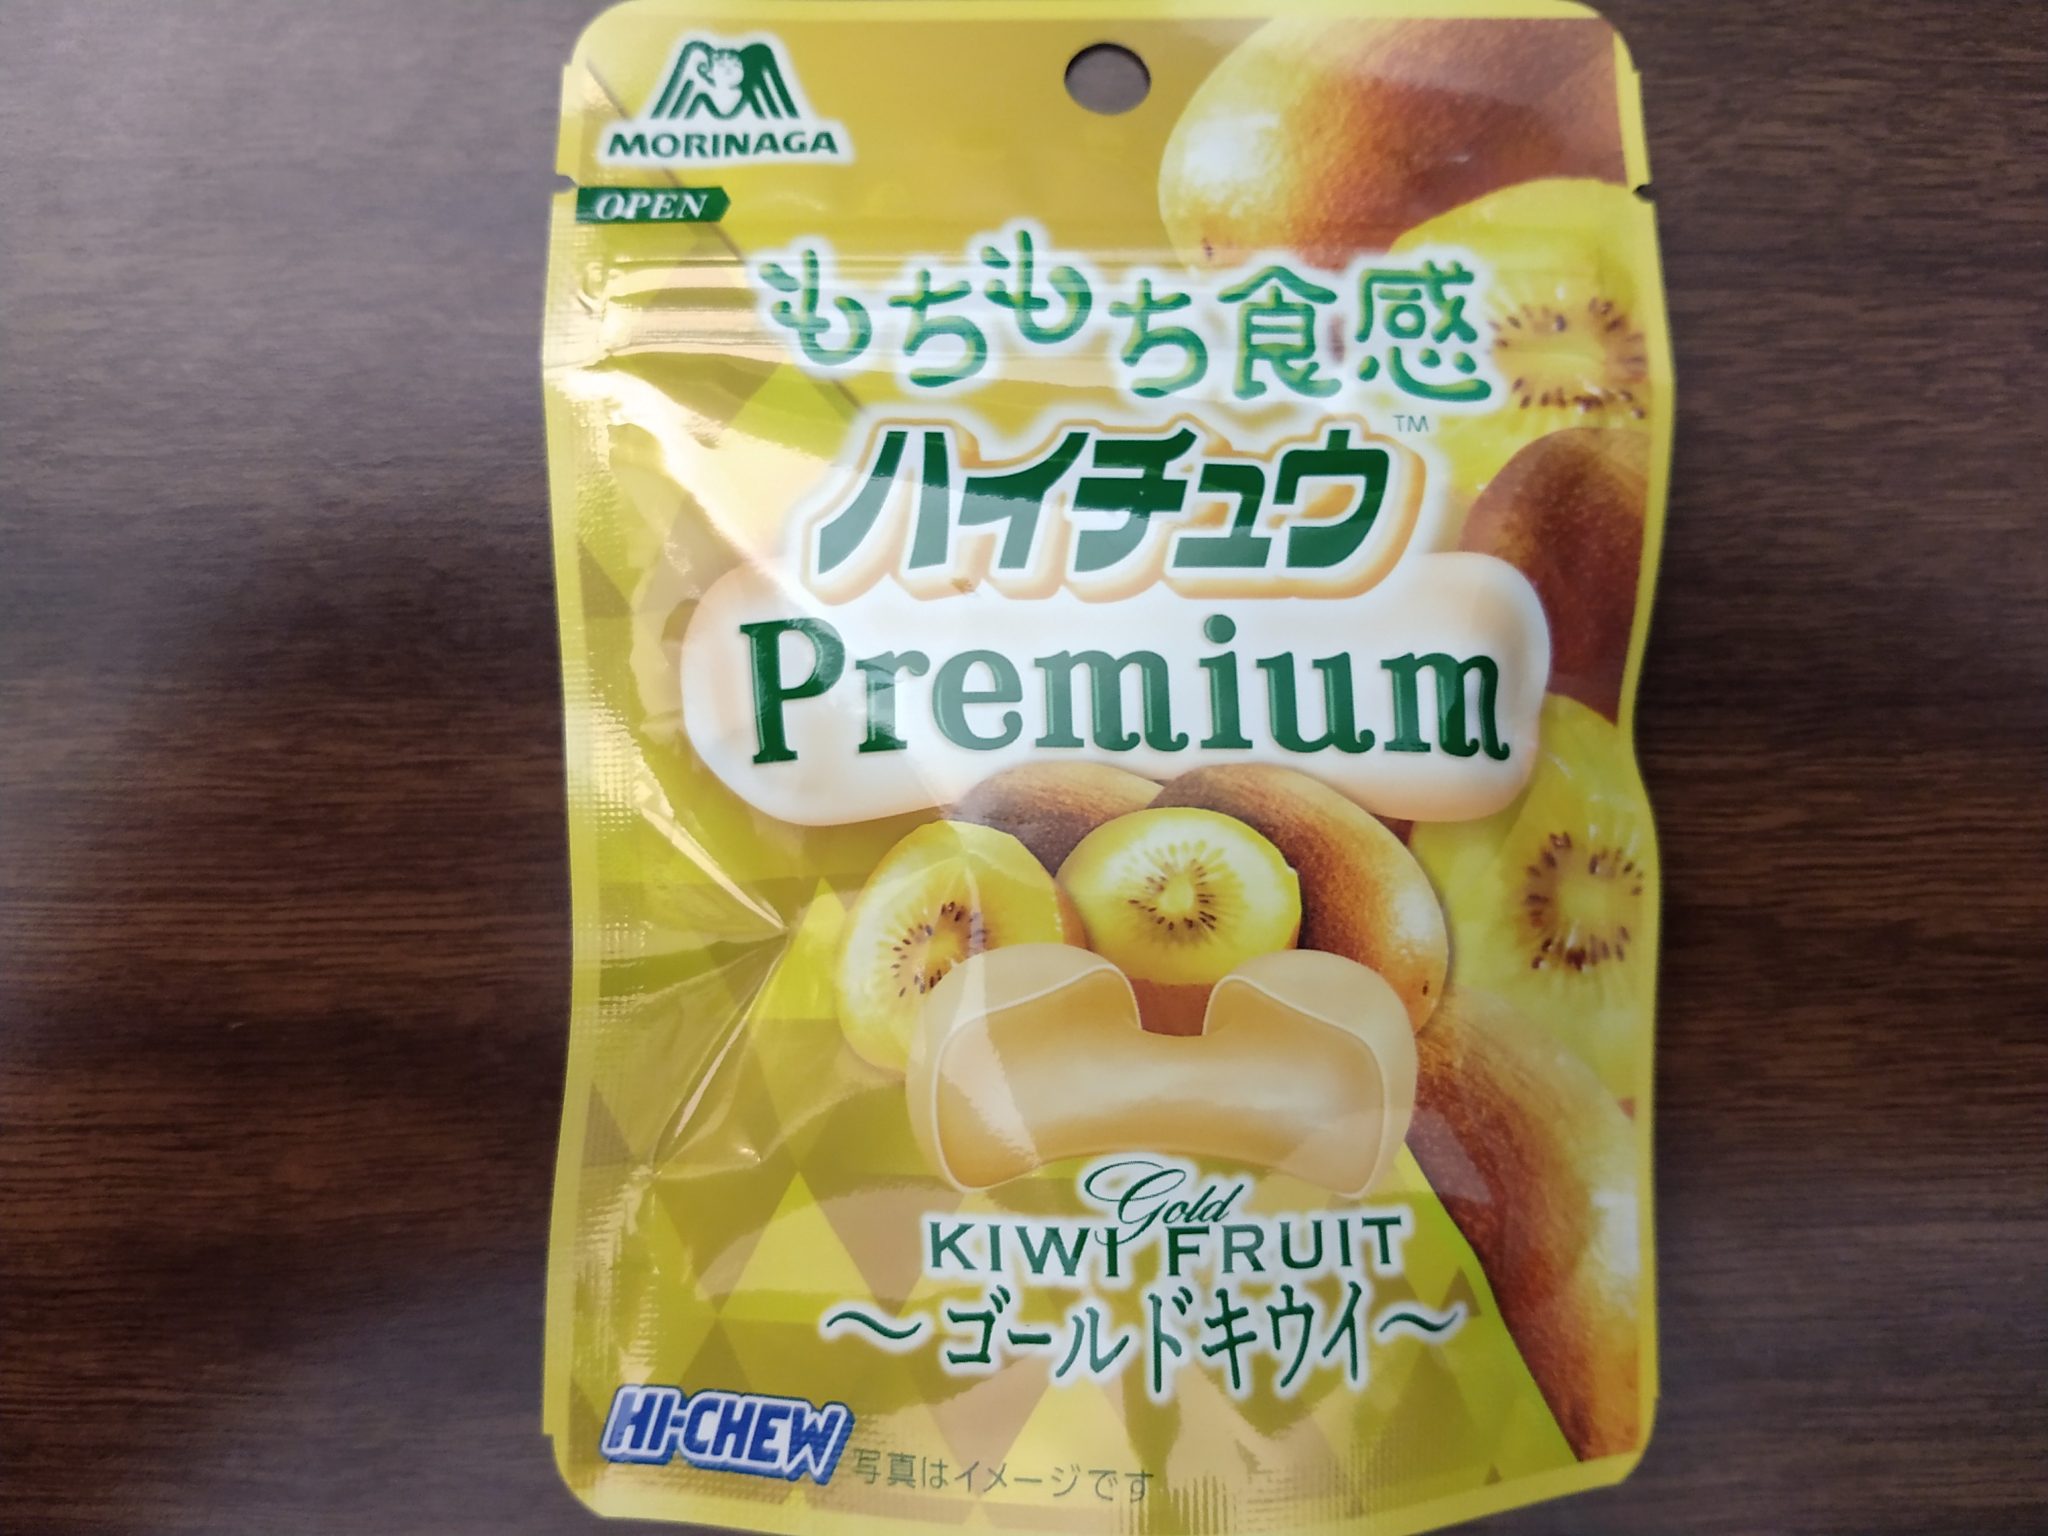 Hi-Chew Premium – Golden Kiwi